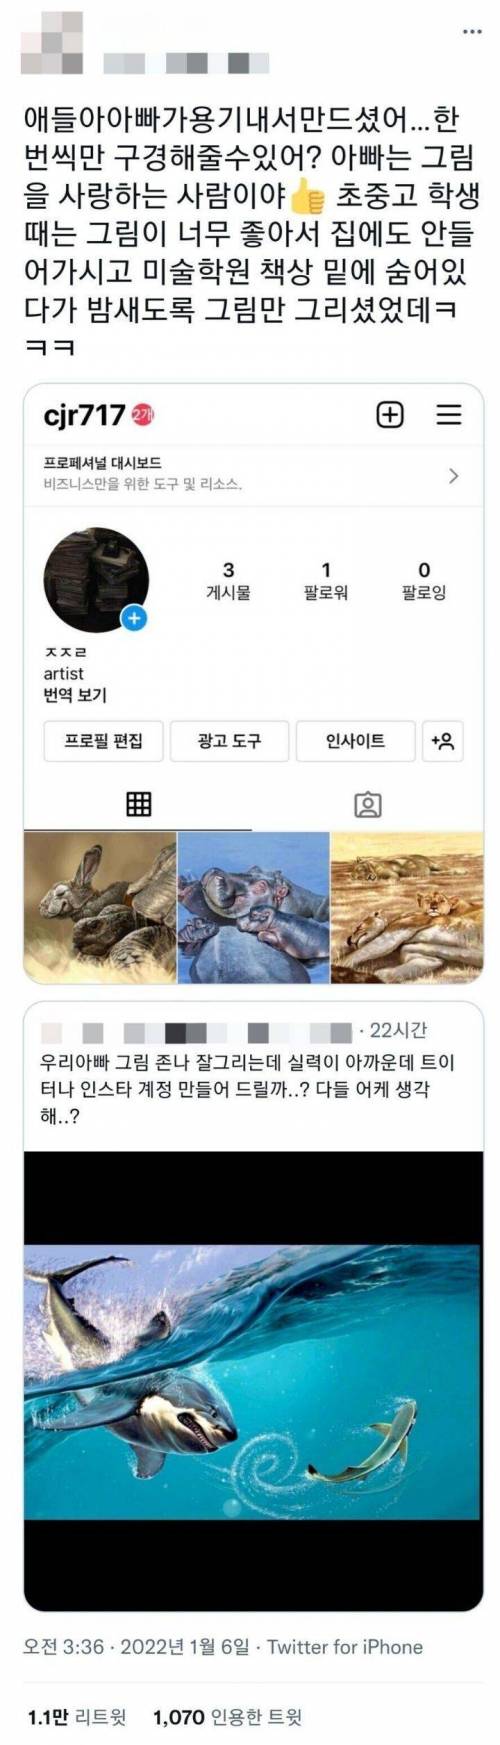 [스압] 인스타그램 계정을 만든 금손 아빠.jpg